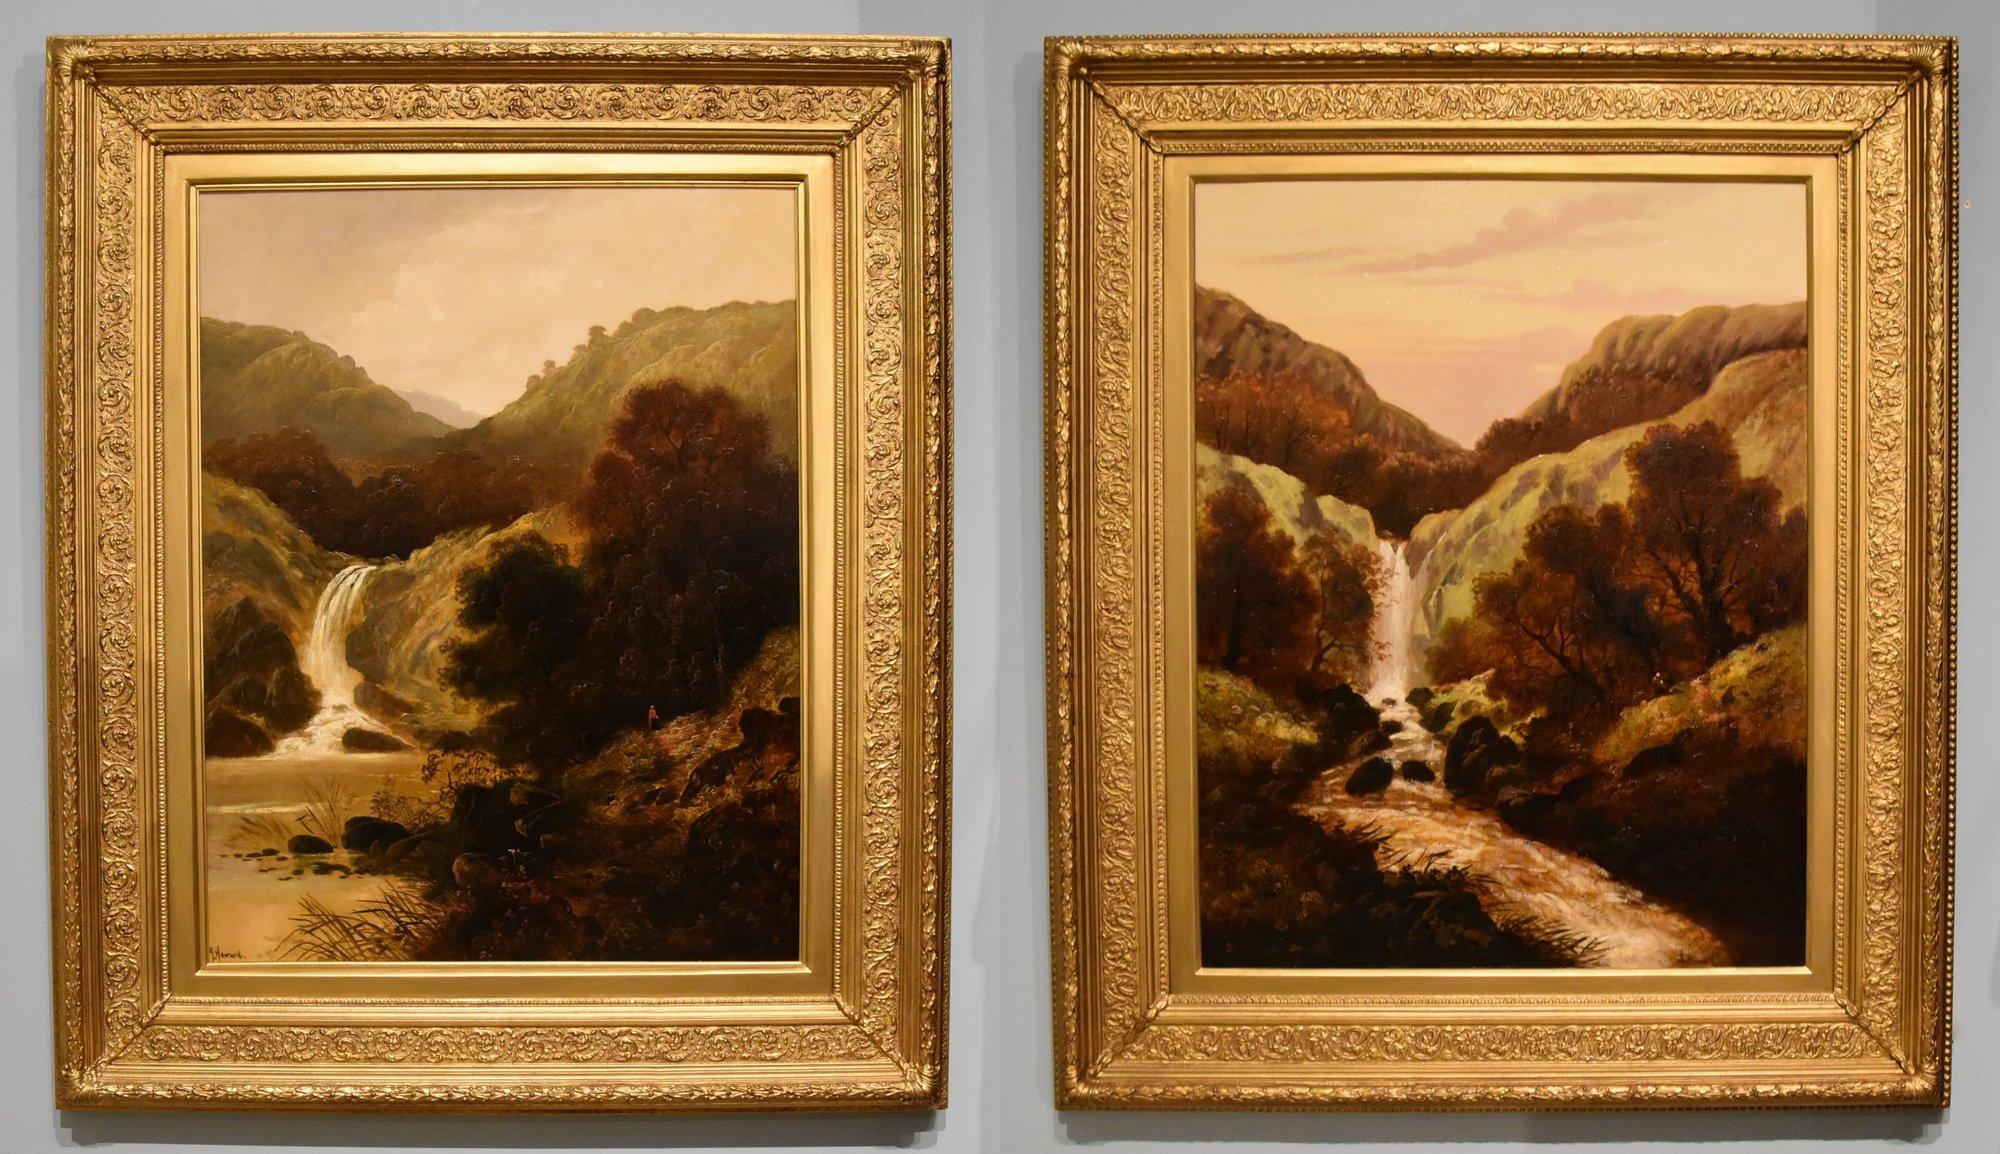 Ölgemälde Paar von J Howard "Highland Waterfalls" blühte 1880er Jahre. Londoner Maler von Stimmungsbildern, die in London ausgestellt wurden. Öl auf Leinwand. Unterschrieben. 

Abmessungen ungerahmt 36  x 38 Zoll
Abmessungen gerahmt 49  x 41